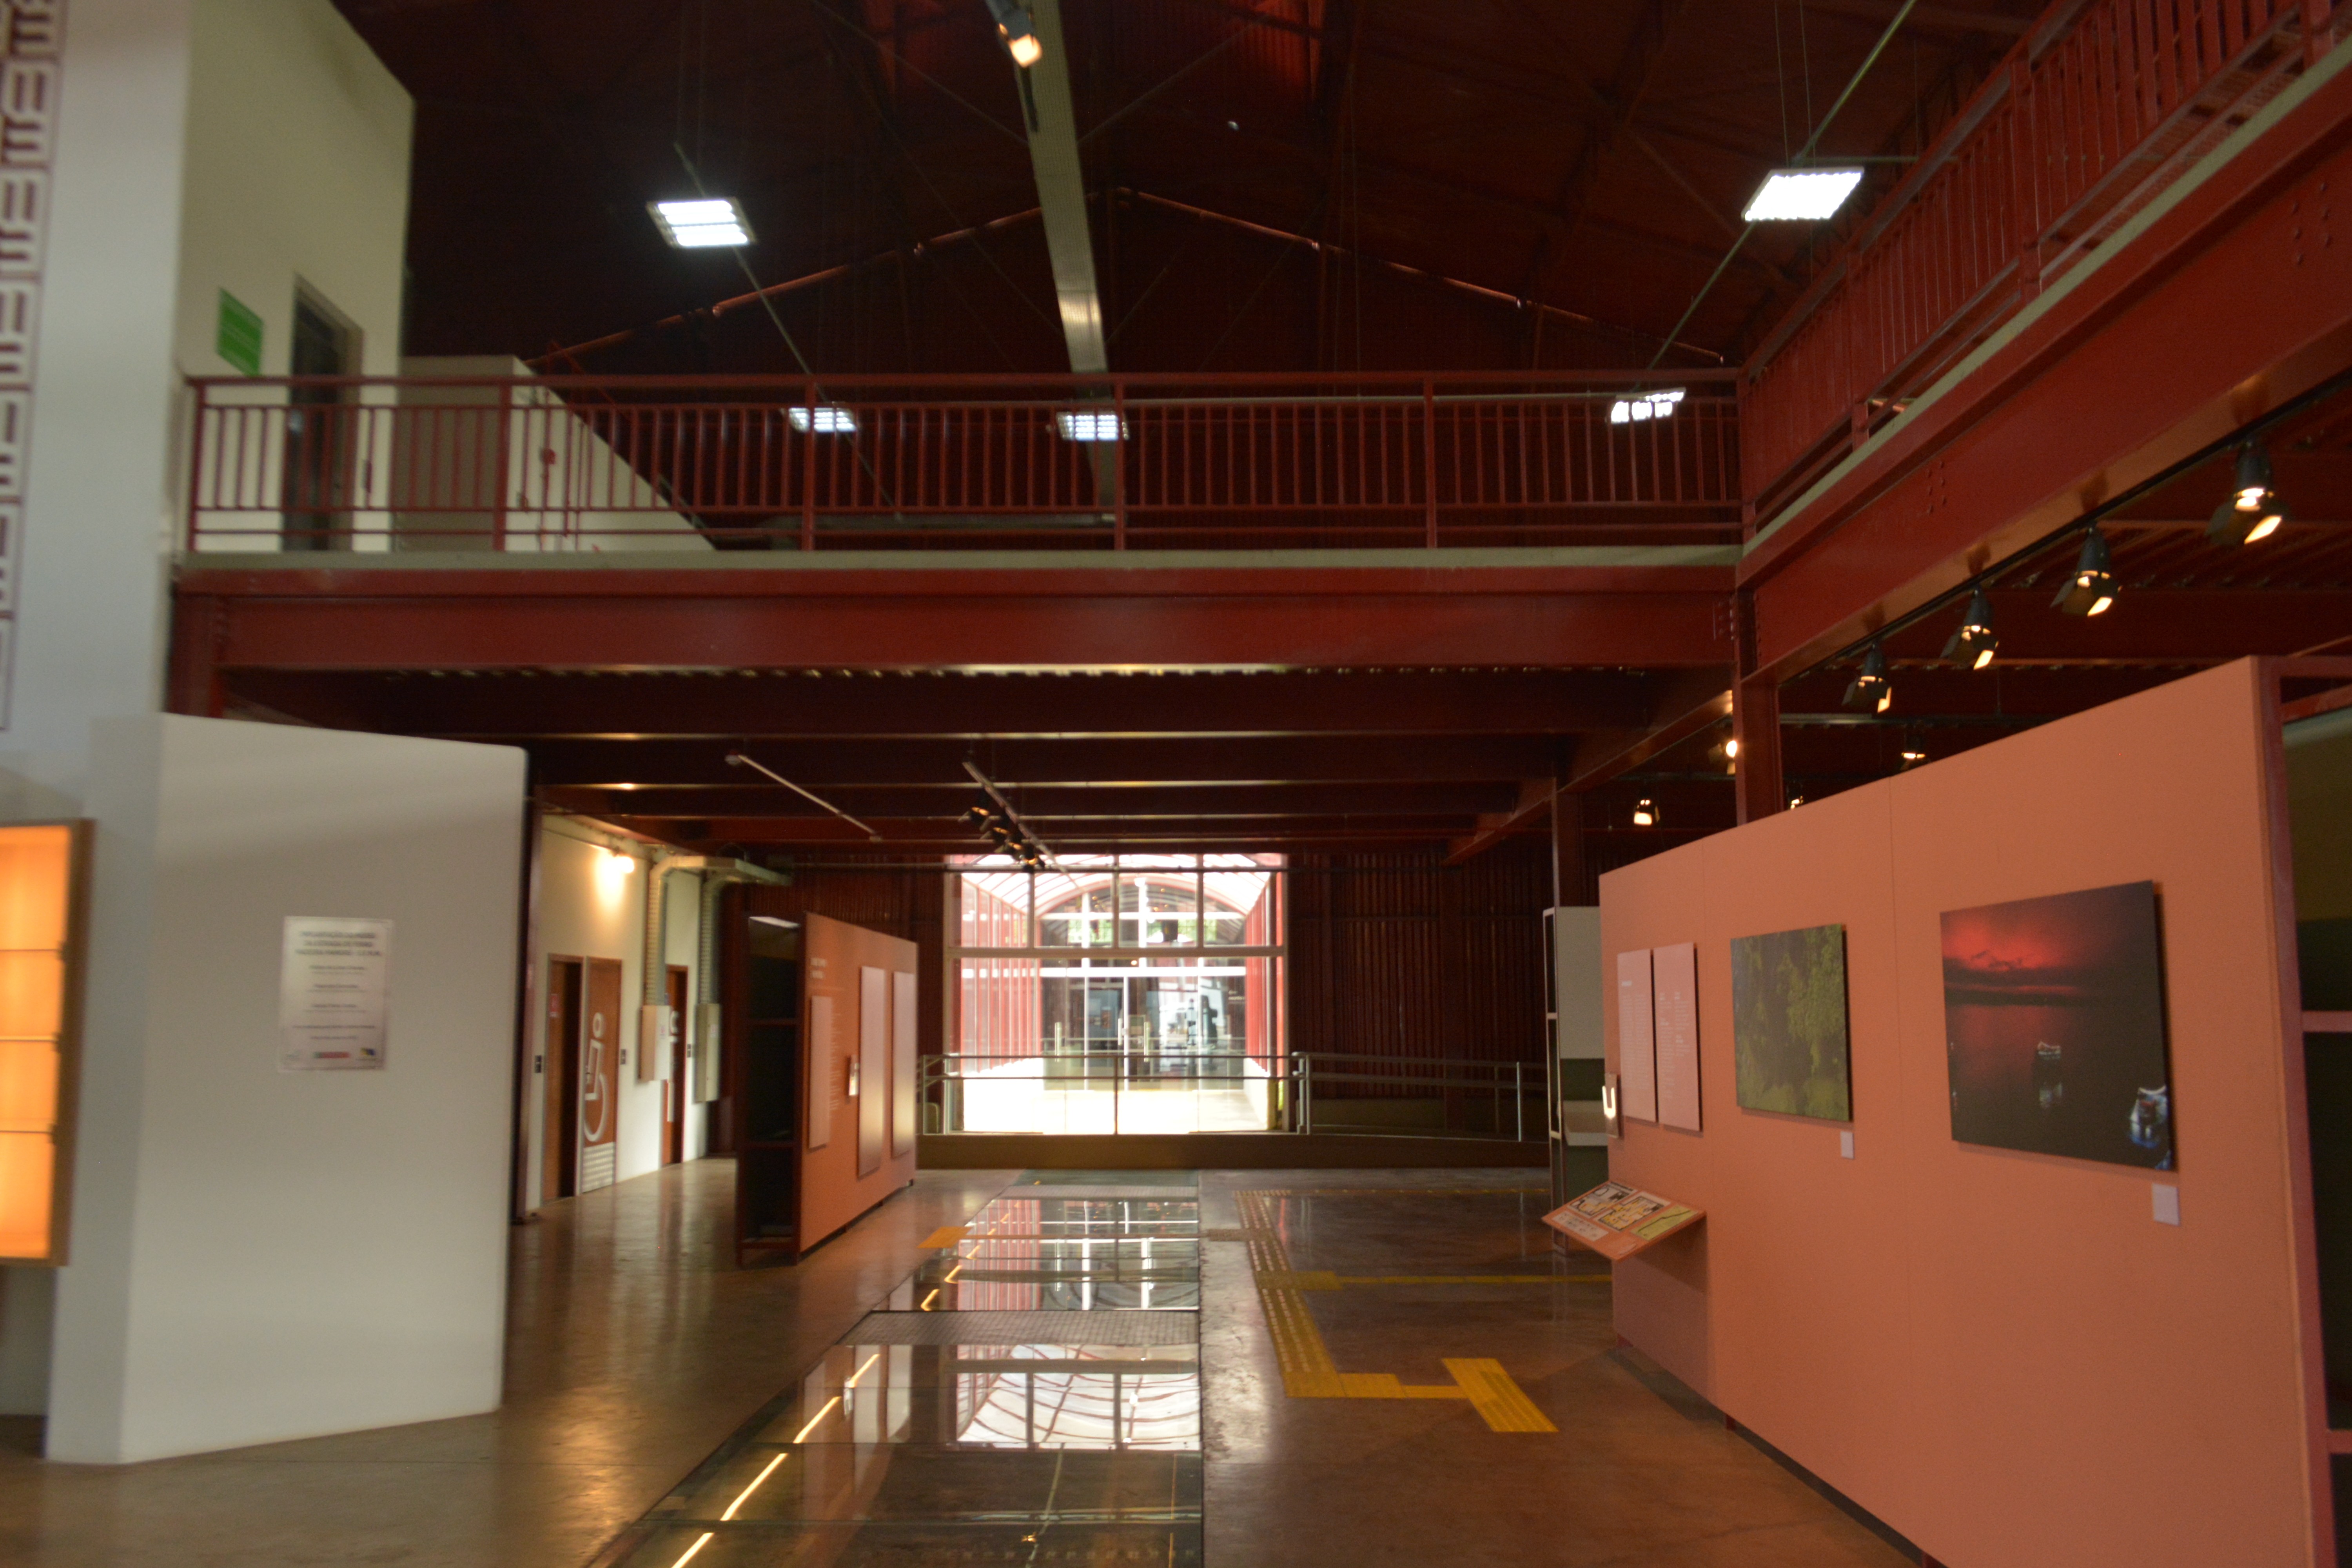 Recepção do museu do Complexo da Estrada de Ferro Madeira Mamoré (EFMM)